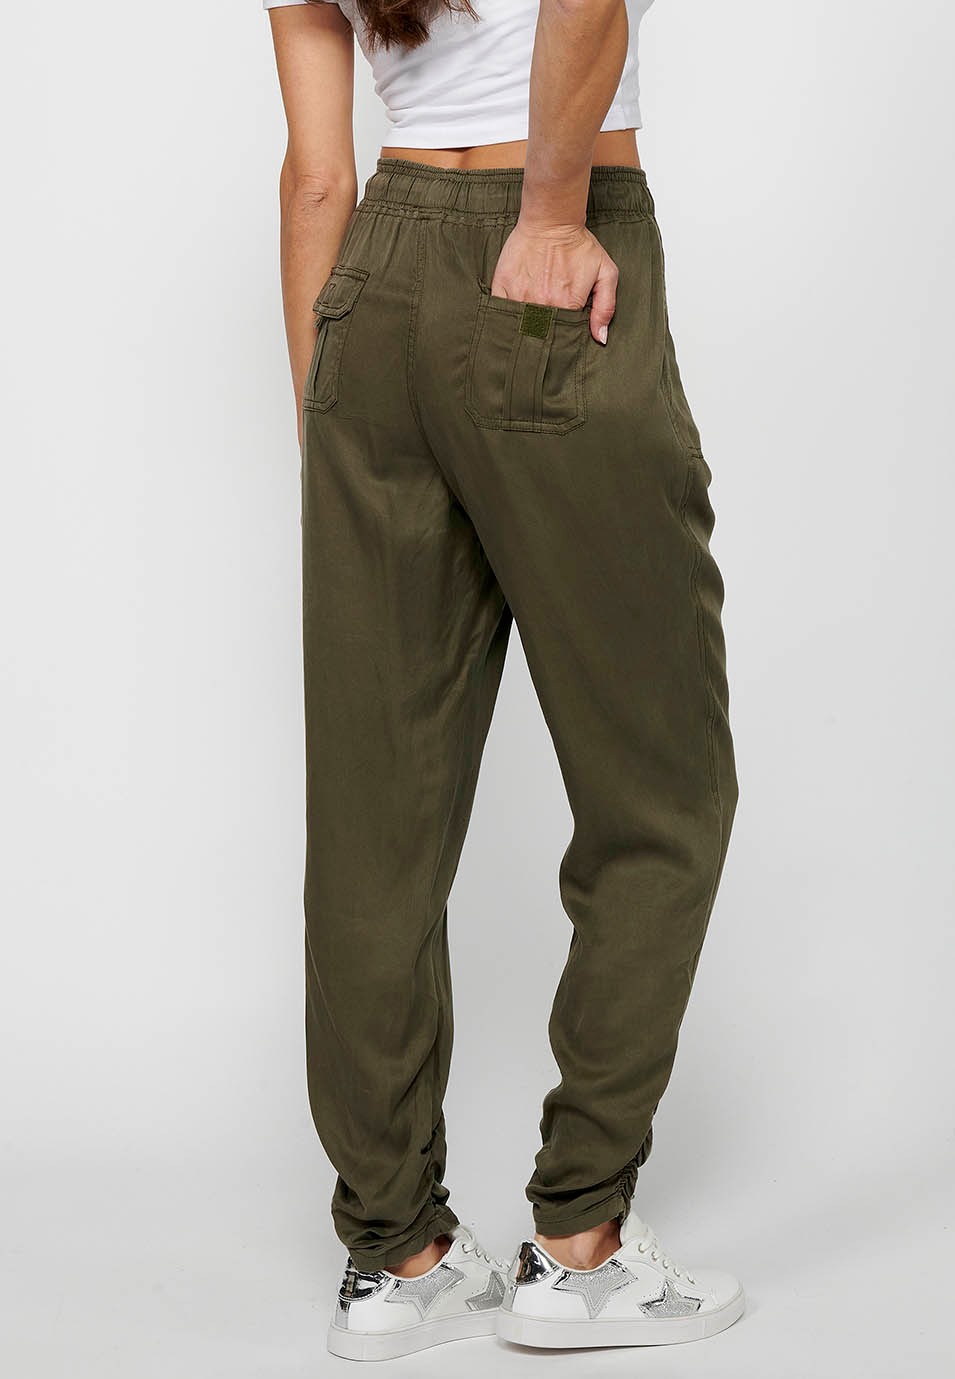 Pantalon de jogging long avec finition bouclée et taille caoutchoutée avec quatre poches, deux poches arrière à rabat de couleur Kaki pour femme 5